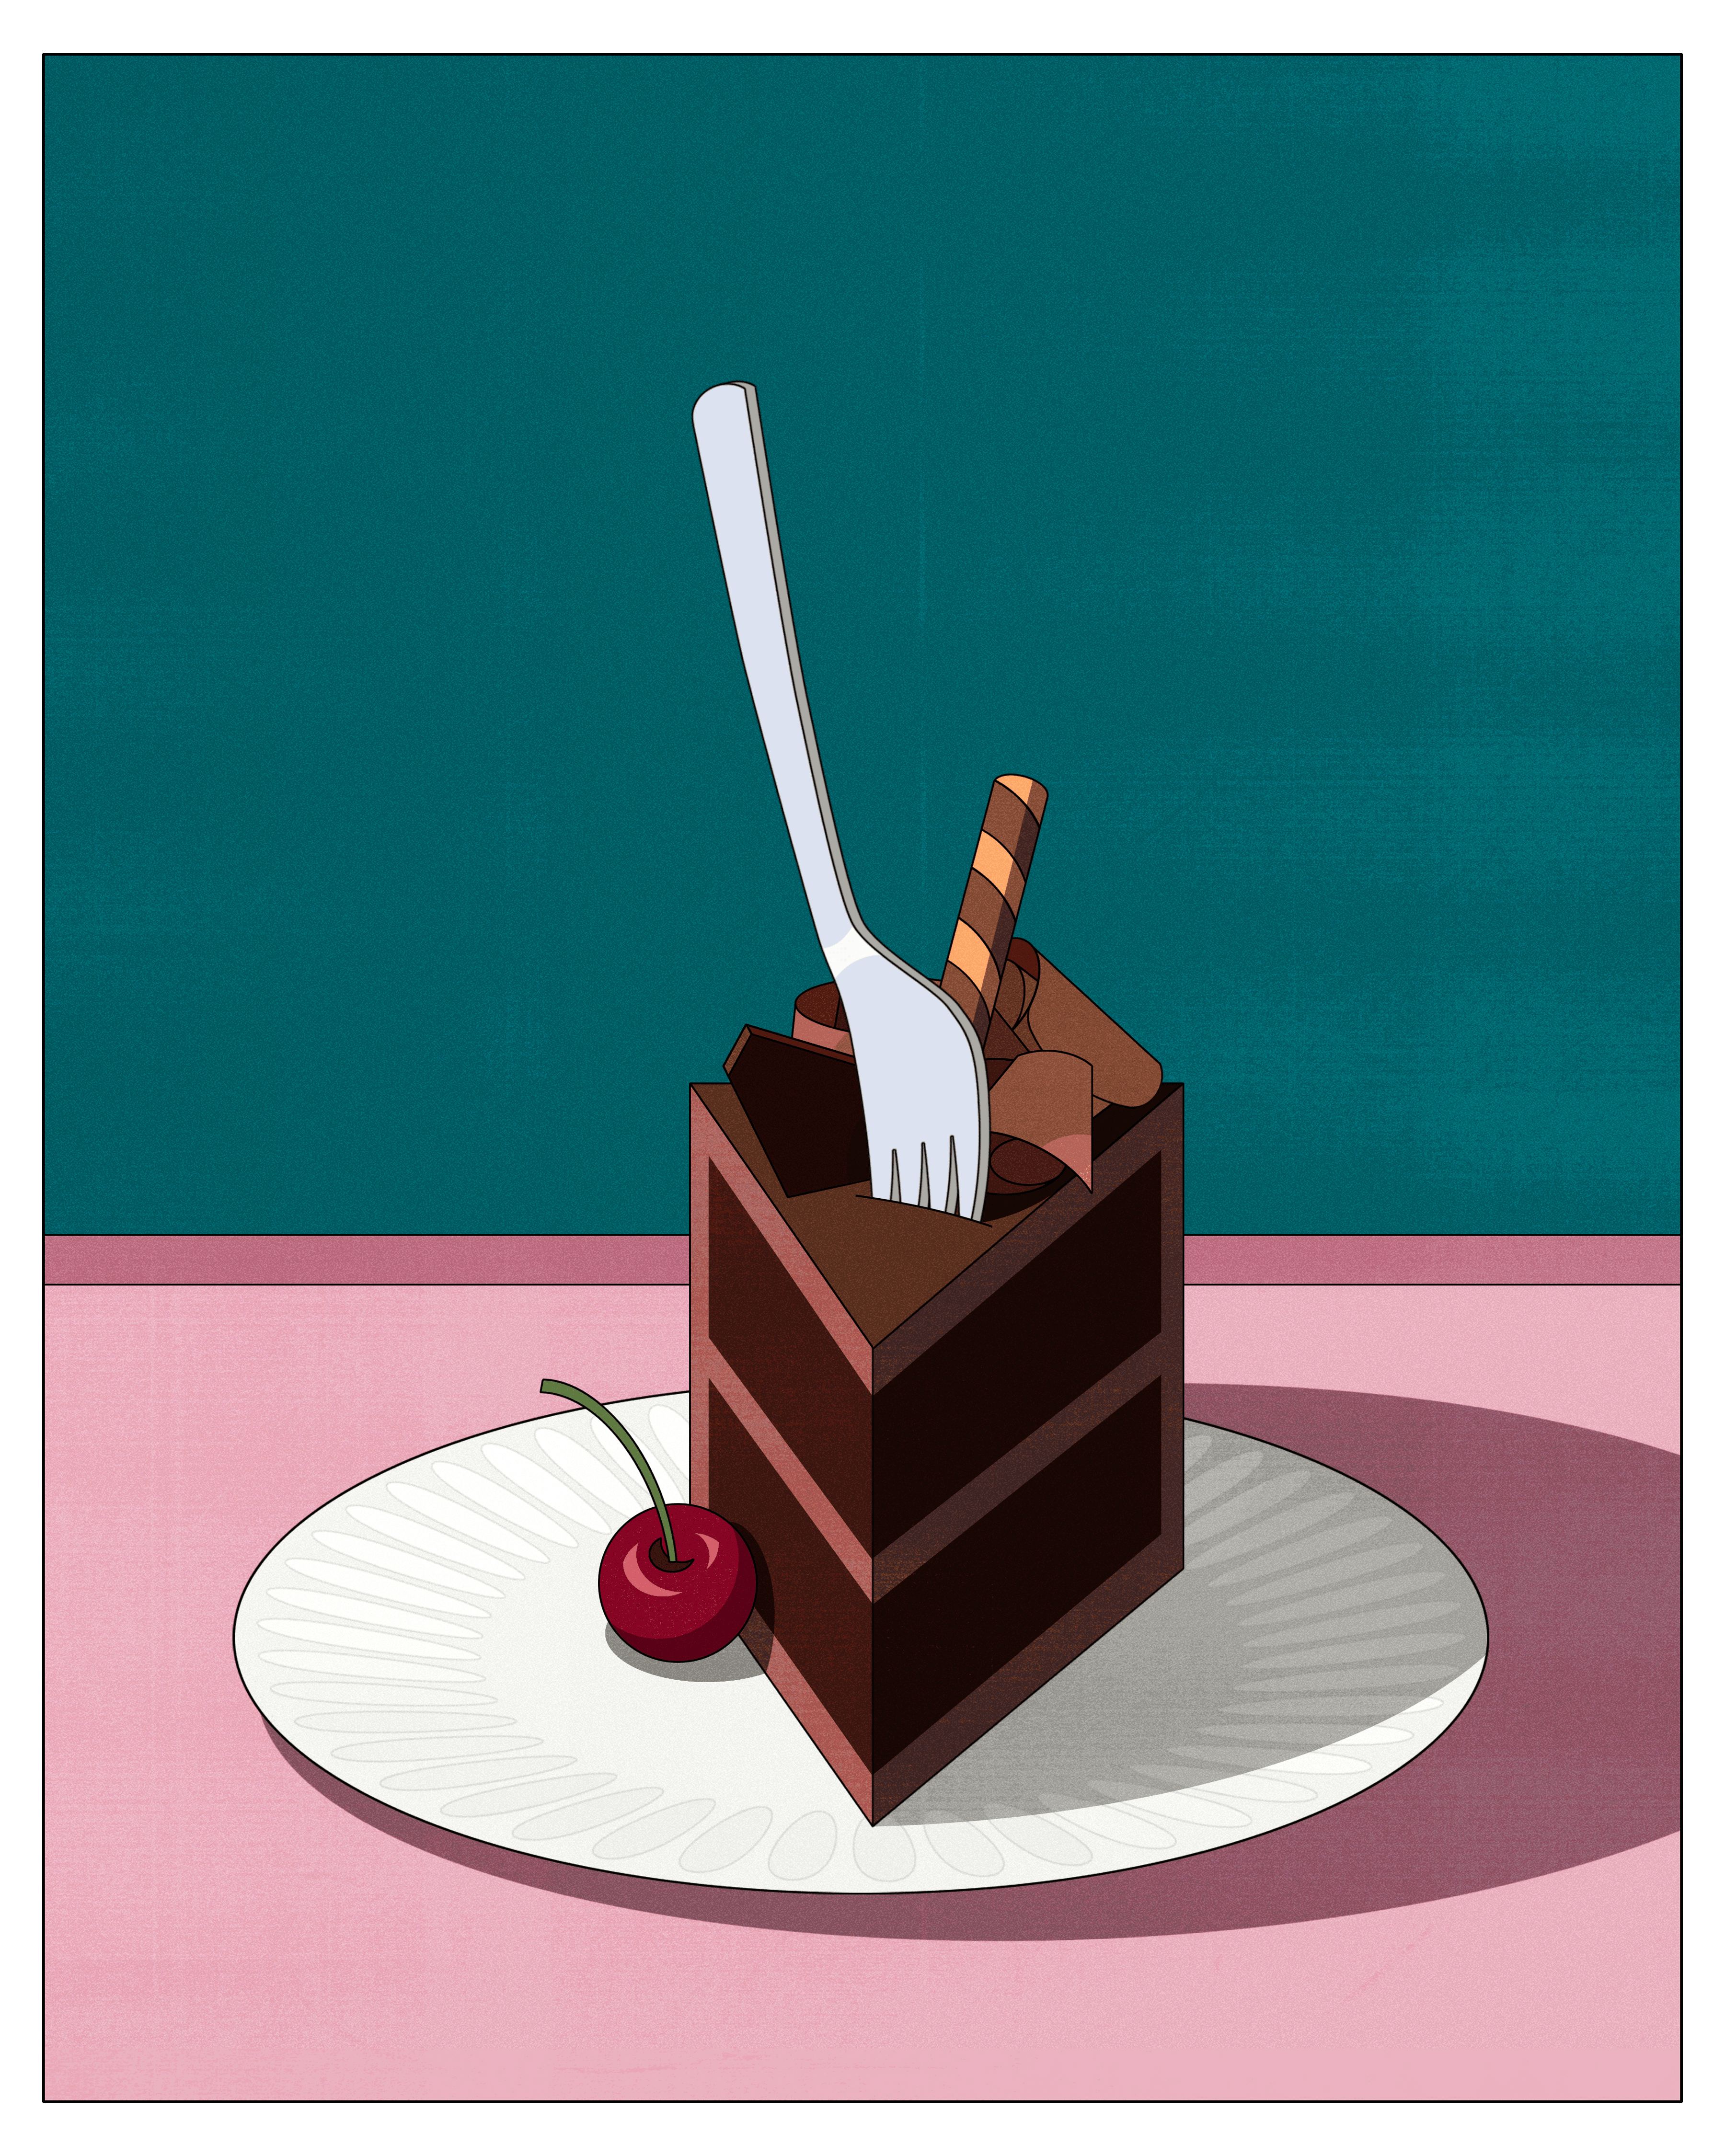 Slice of cake